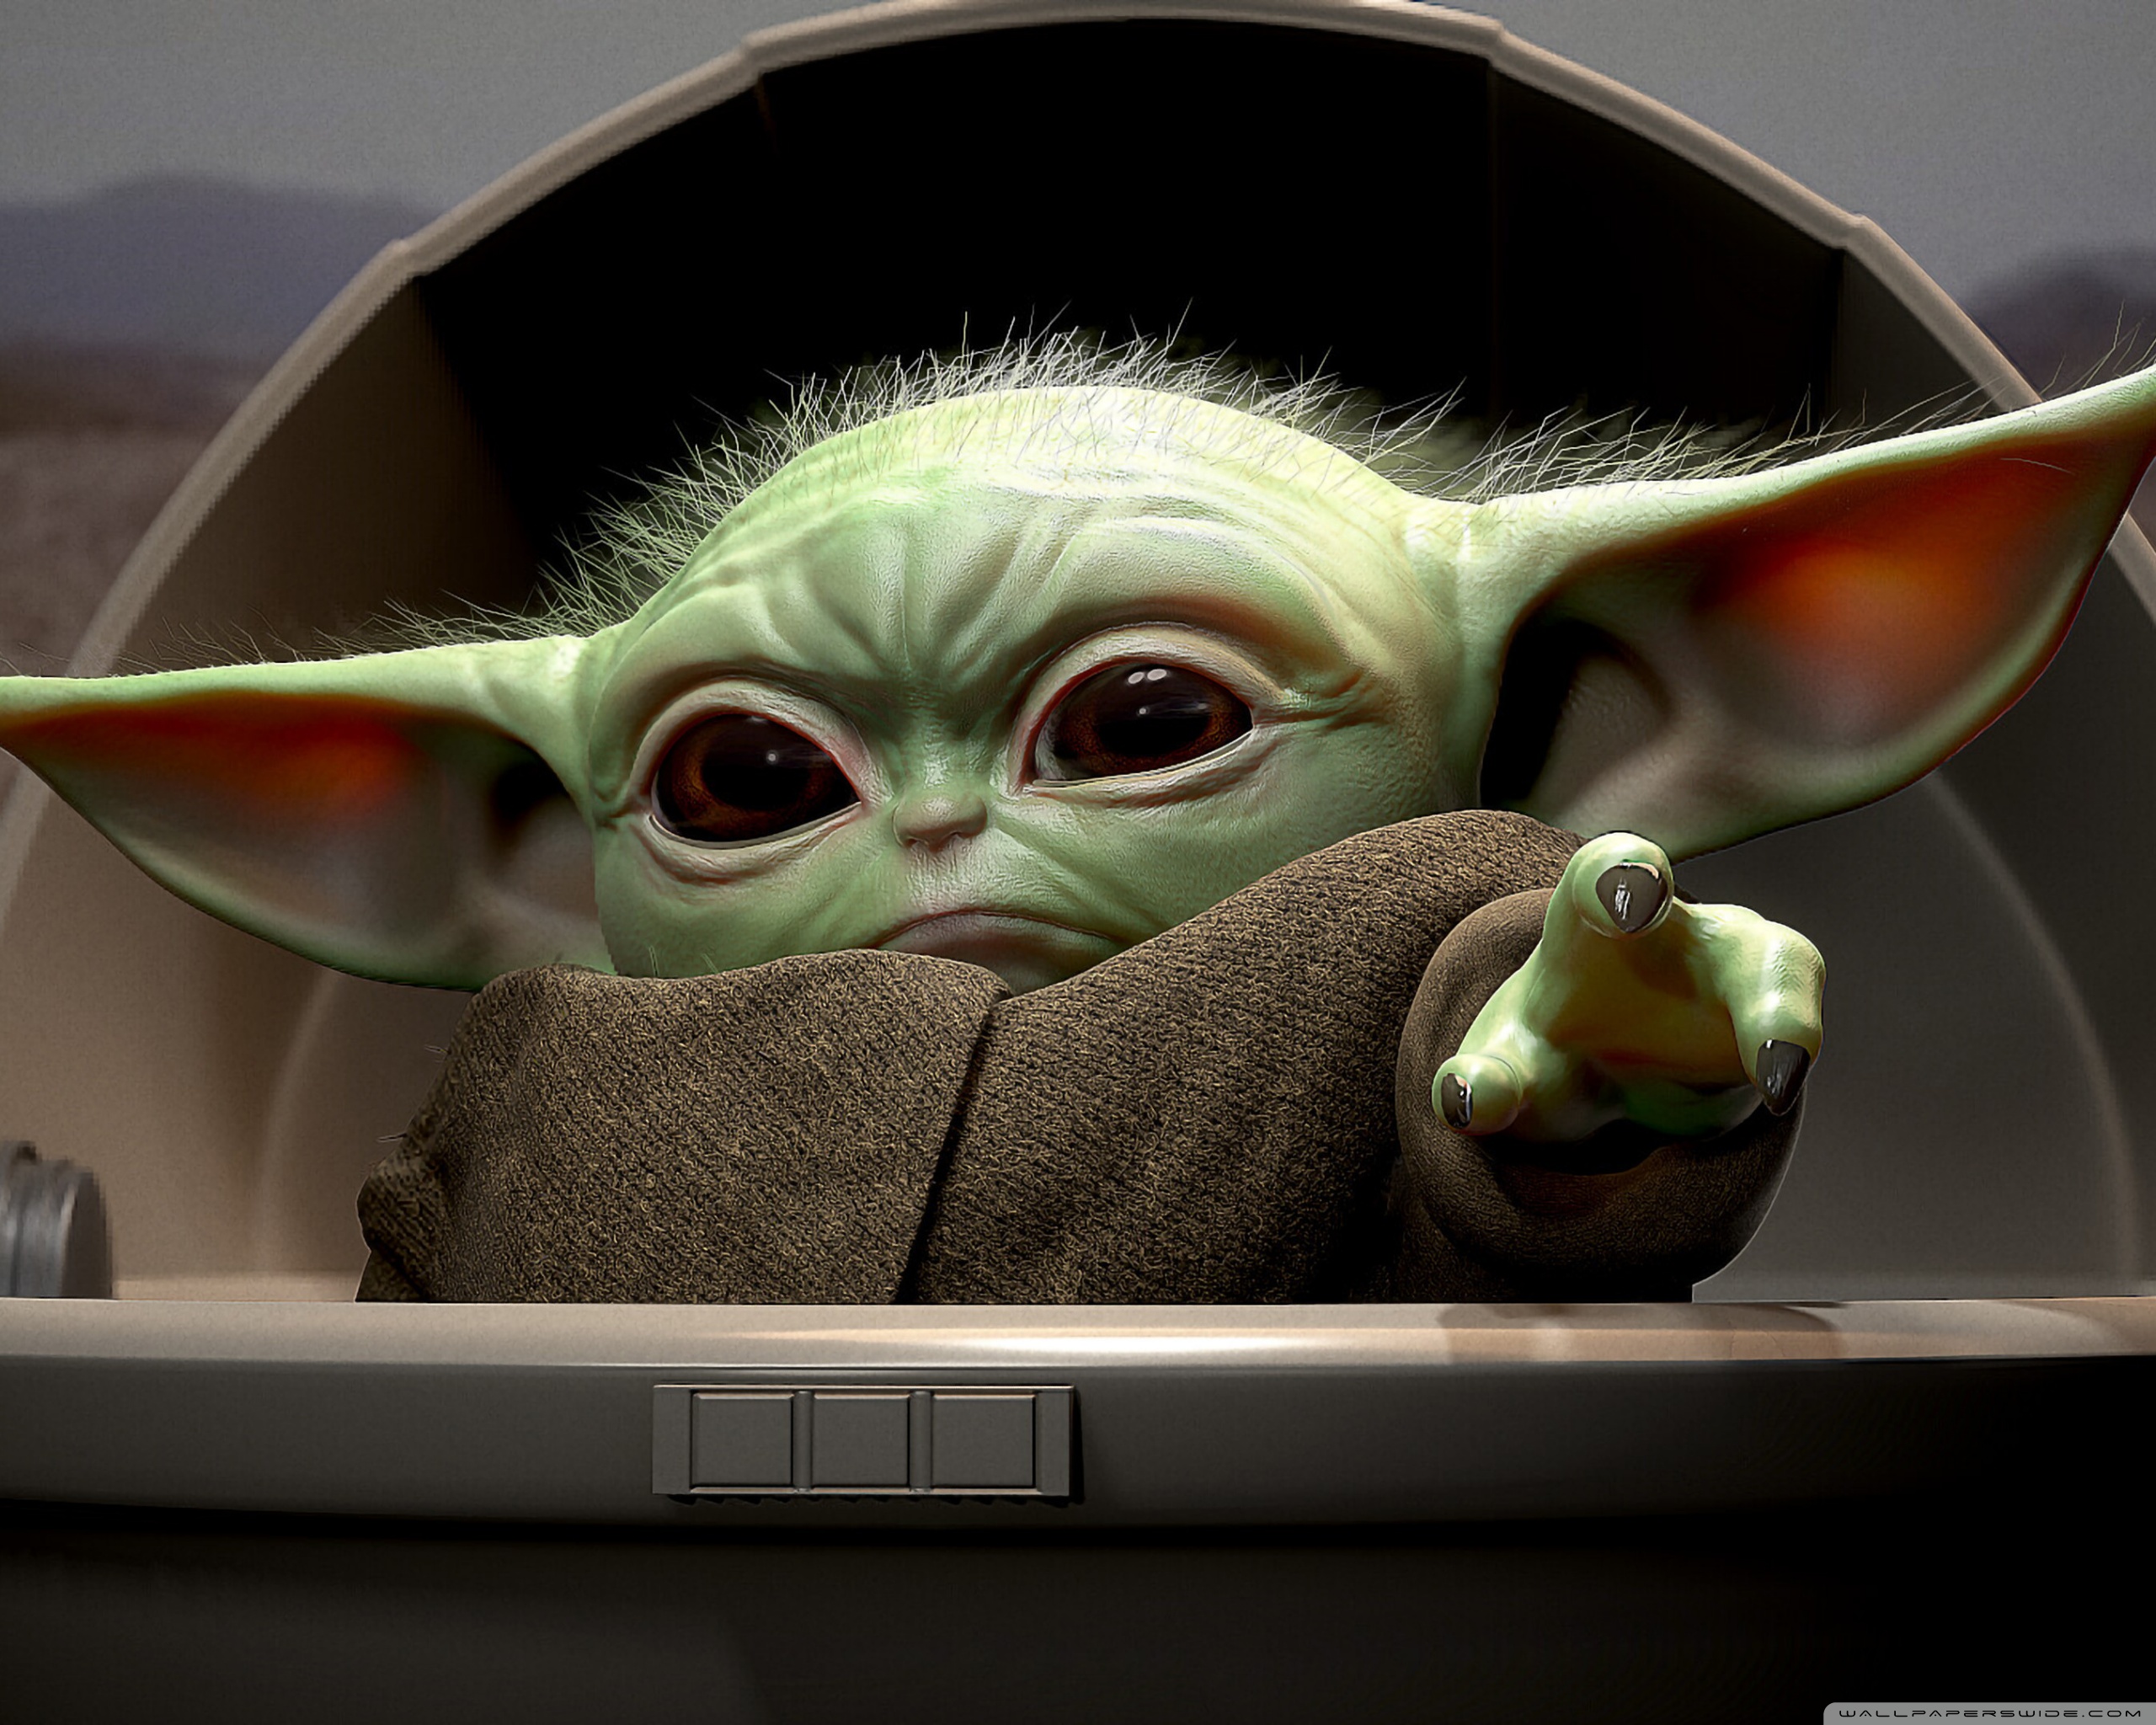 Hãy nhấp vào hình ảnh đáng yêu của Baby Yoda để đắm chìm trong phong cách Star Wars ngộ nghĩnh và dễ mến. Chào đón người dùng vào một thế giới xa xôi đầy sự kỳ diệu và hài hước.